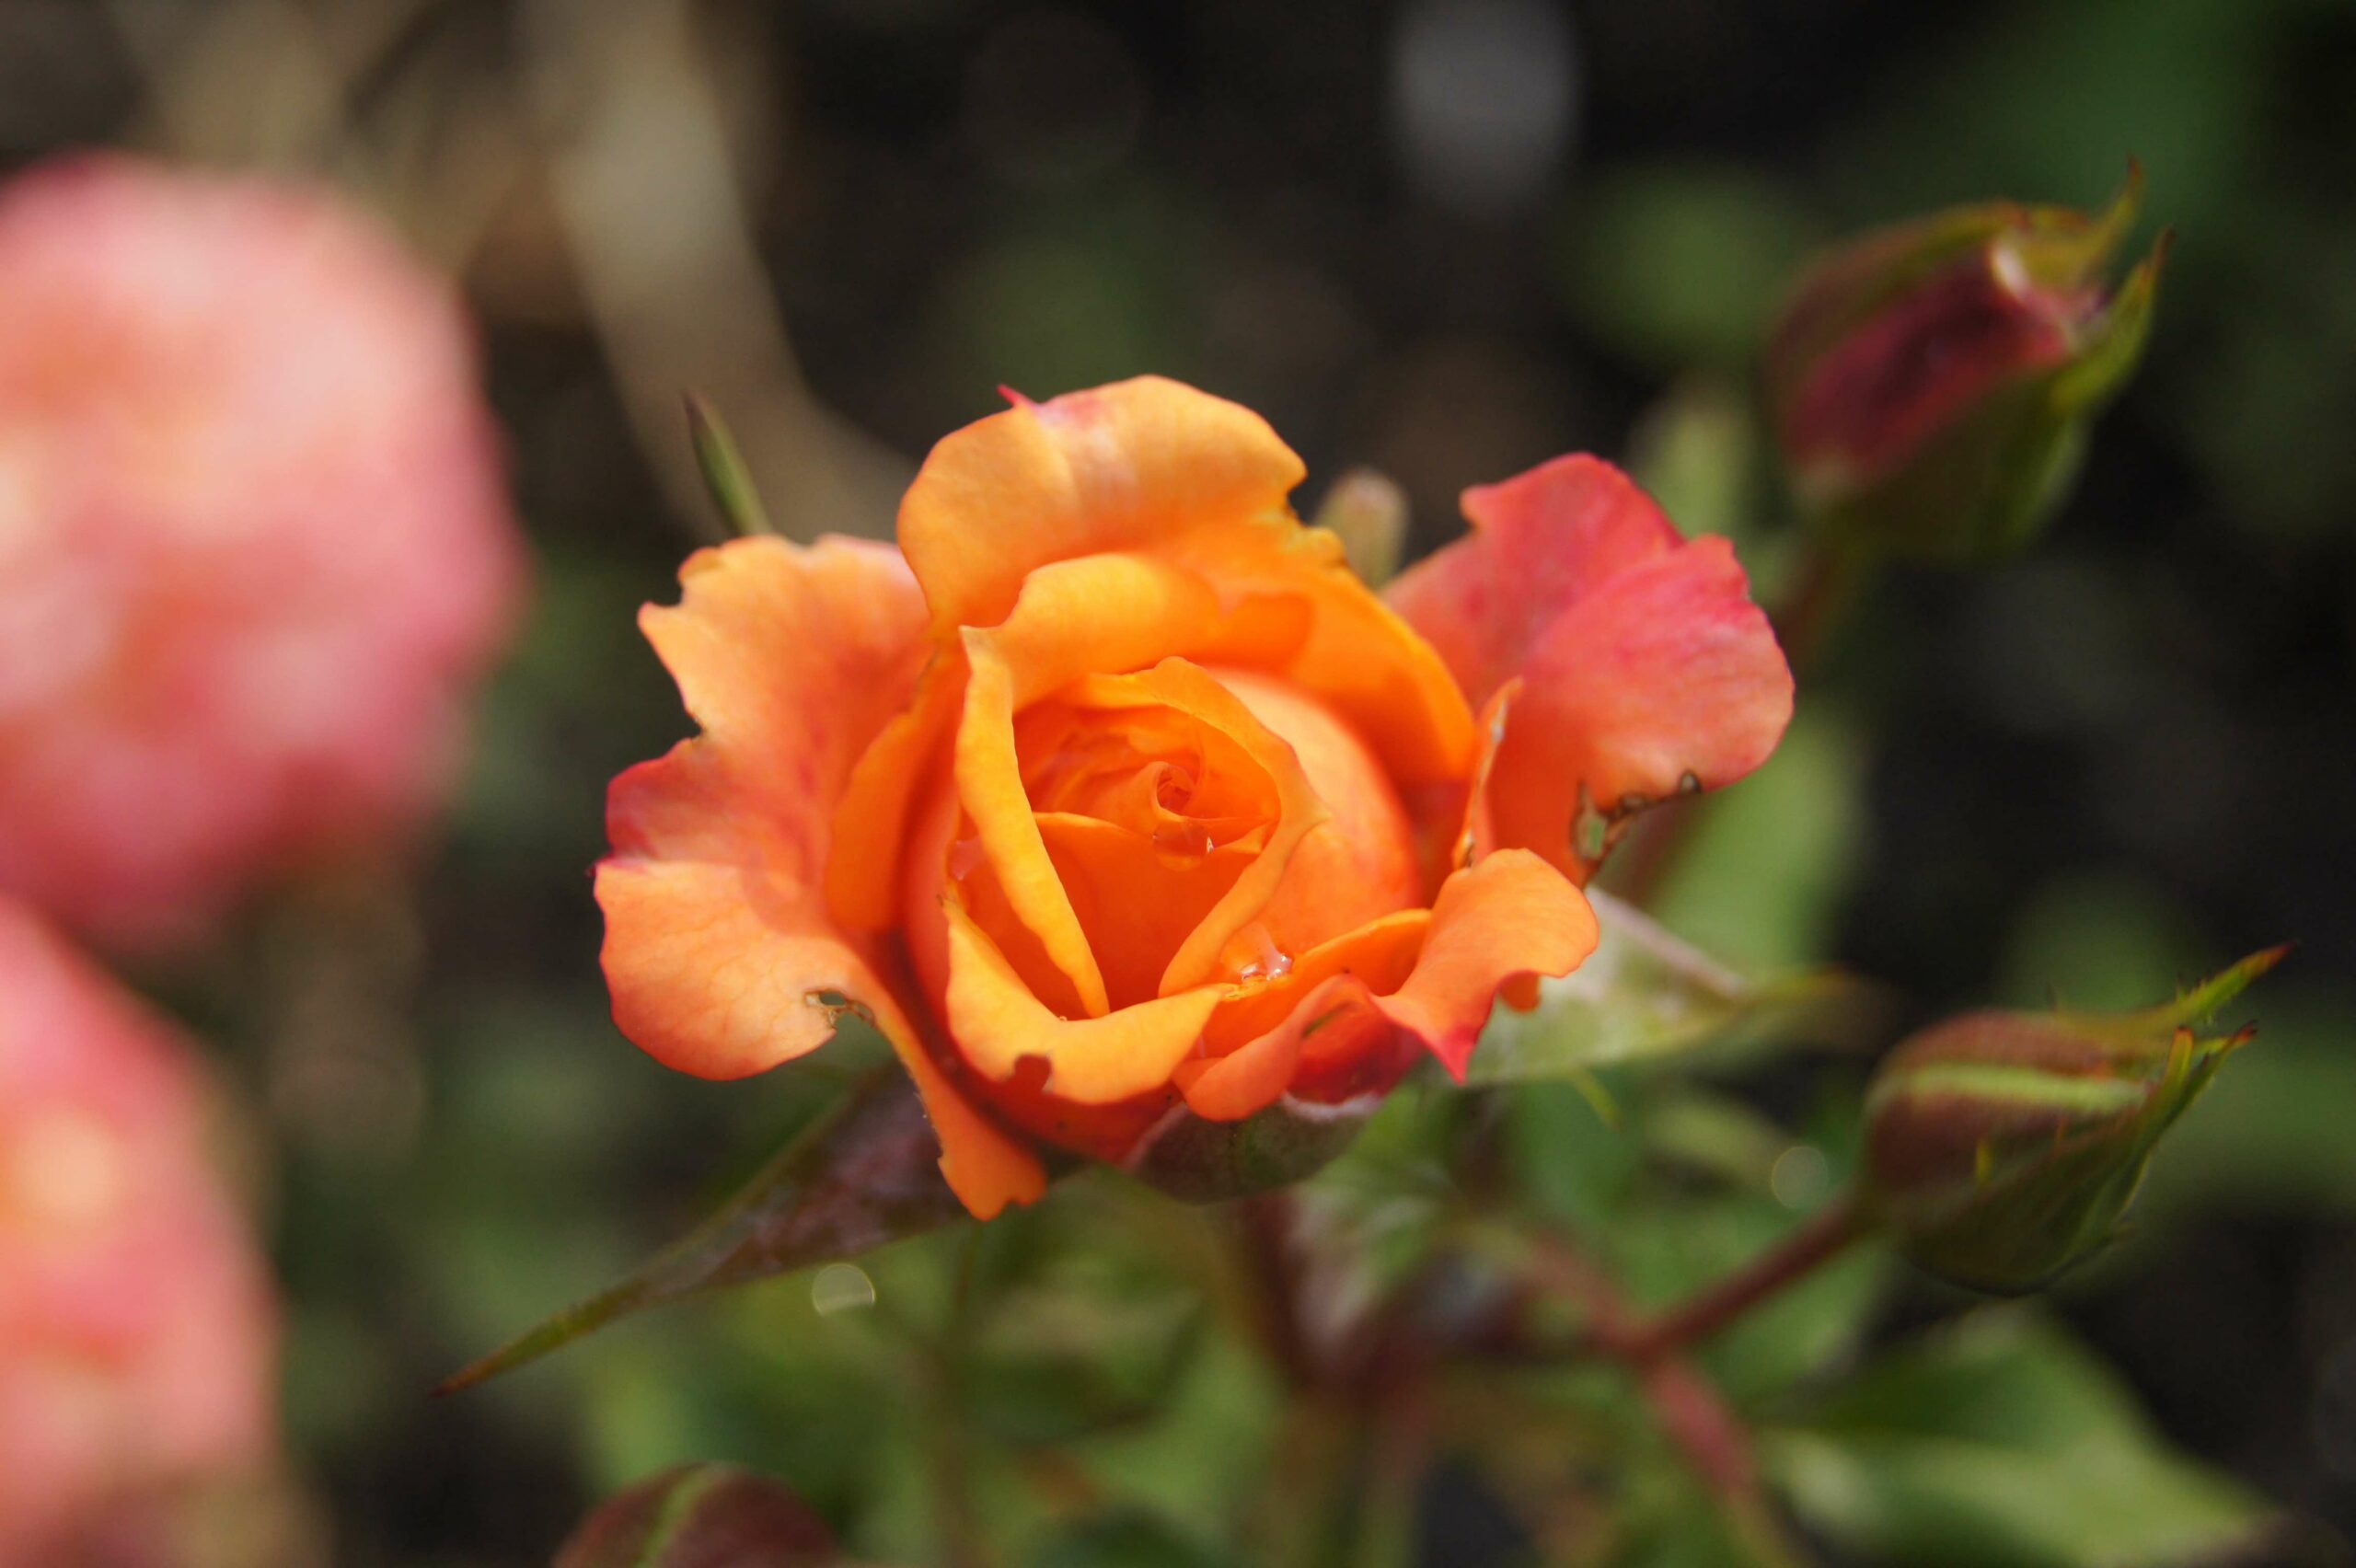 Close up of orange rose